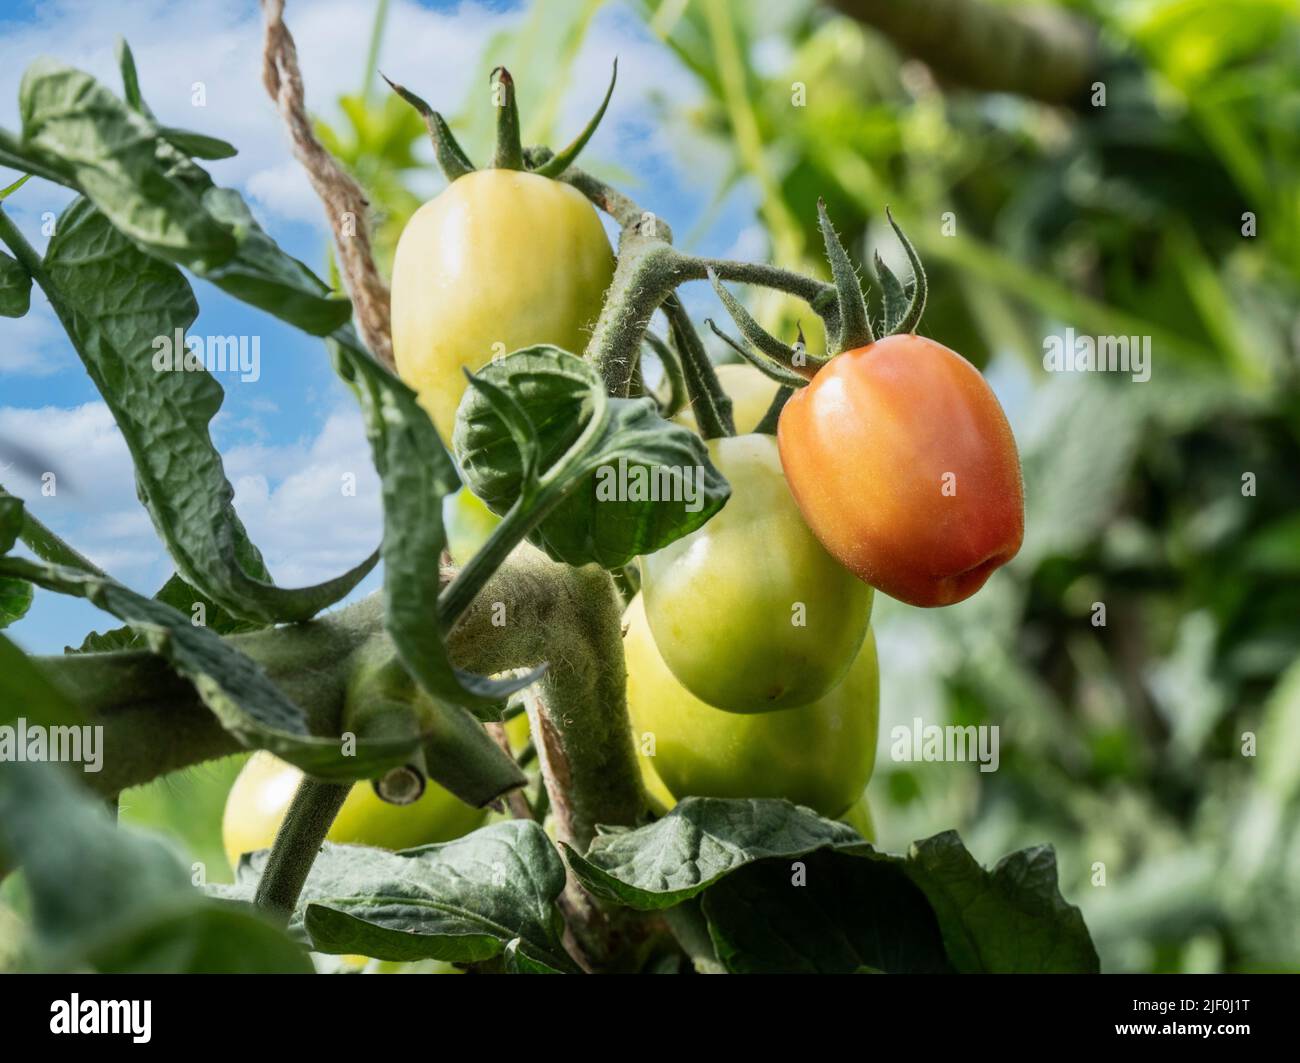 Tomate 'Crimson Plum' Solanum lycopersicum L. Reifung auf Weinreben. Eine süsse, sukkftige Pflaume im „Roma“-Stil mit reichhaltigem, tiefem Geschmack. Die Karmelpflaume wird ab Juli ernten. Im Freien in sonnenbeschienenen Küche Garten Gemüsegarten Zuteilung. Stockfoto